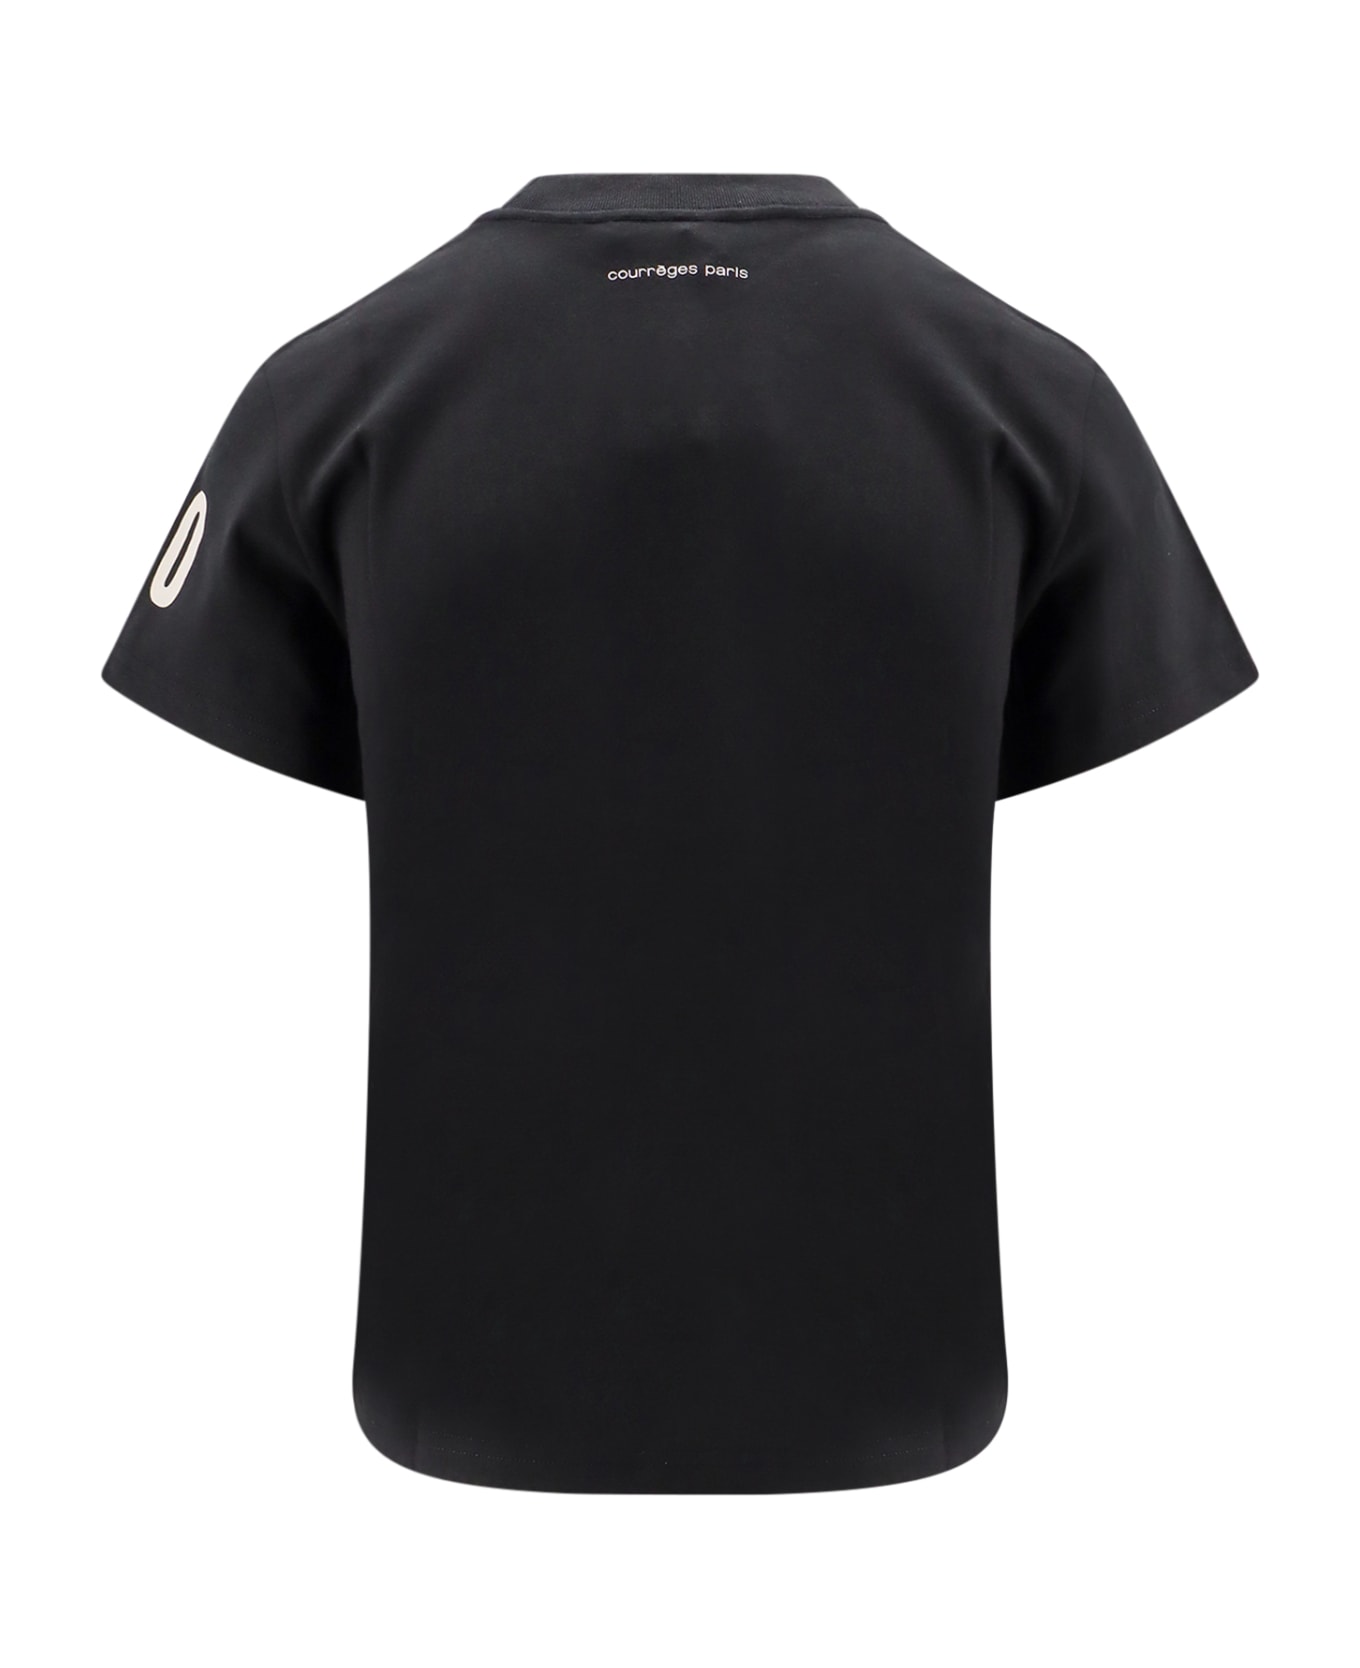 Courrèges T-shirt - Black Tシャツ